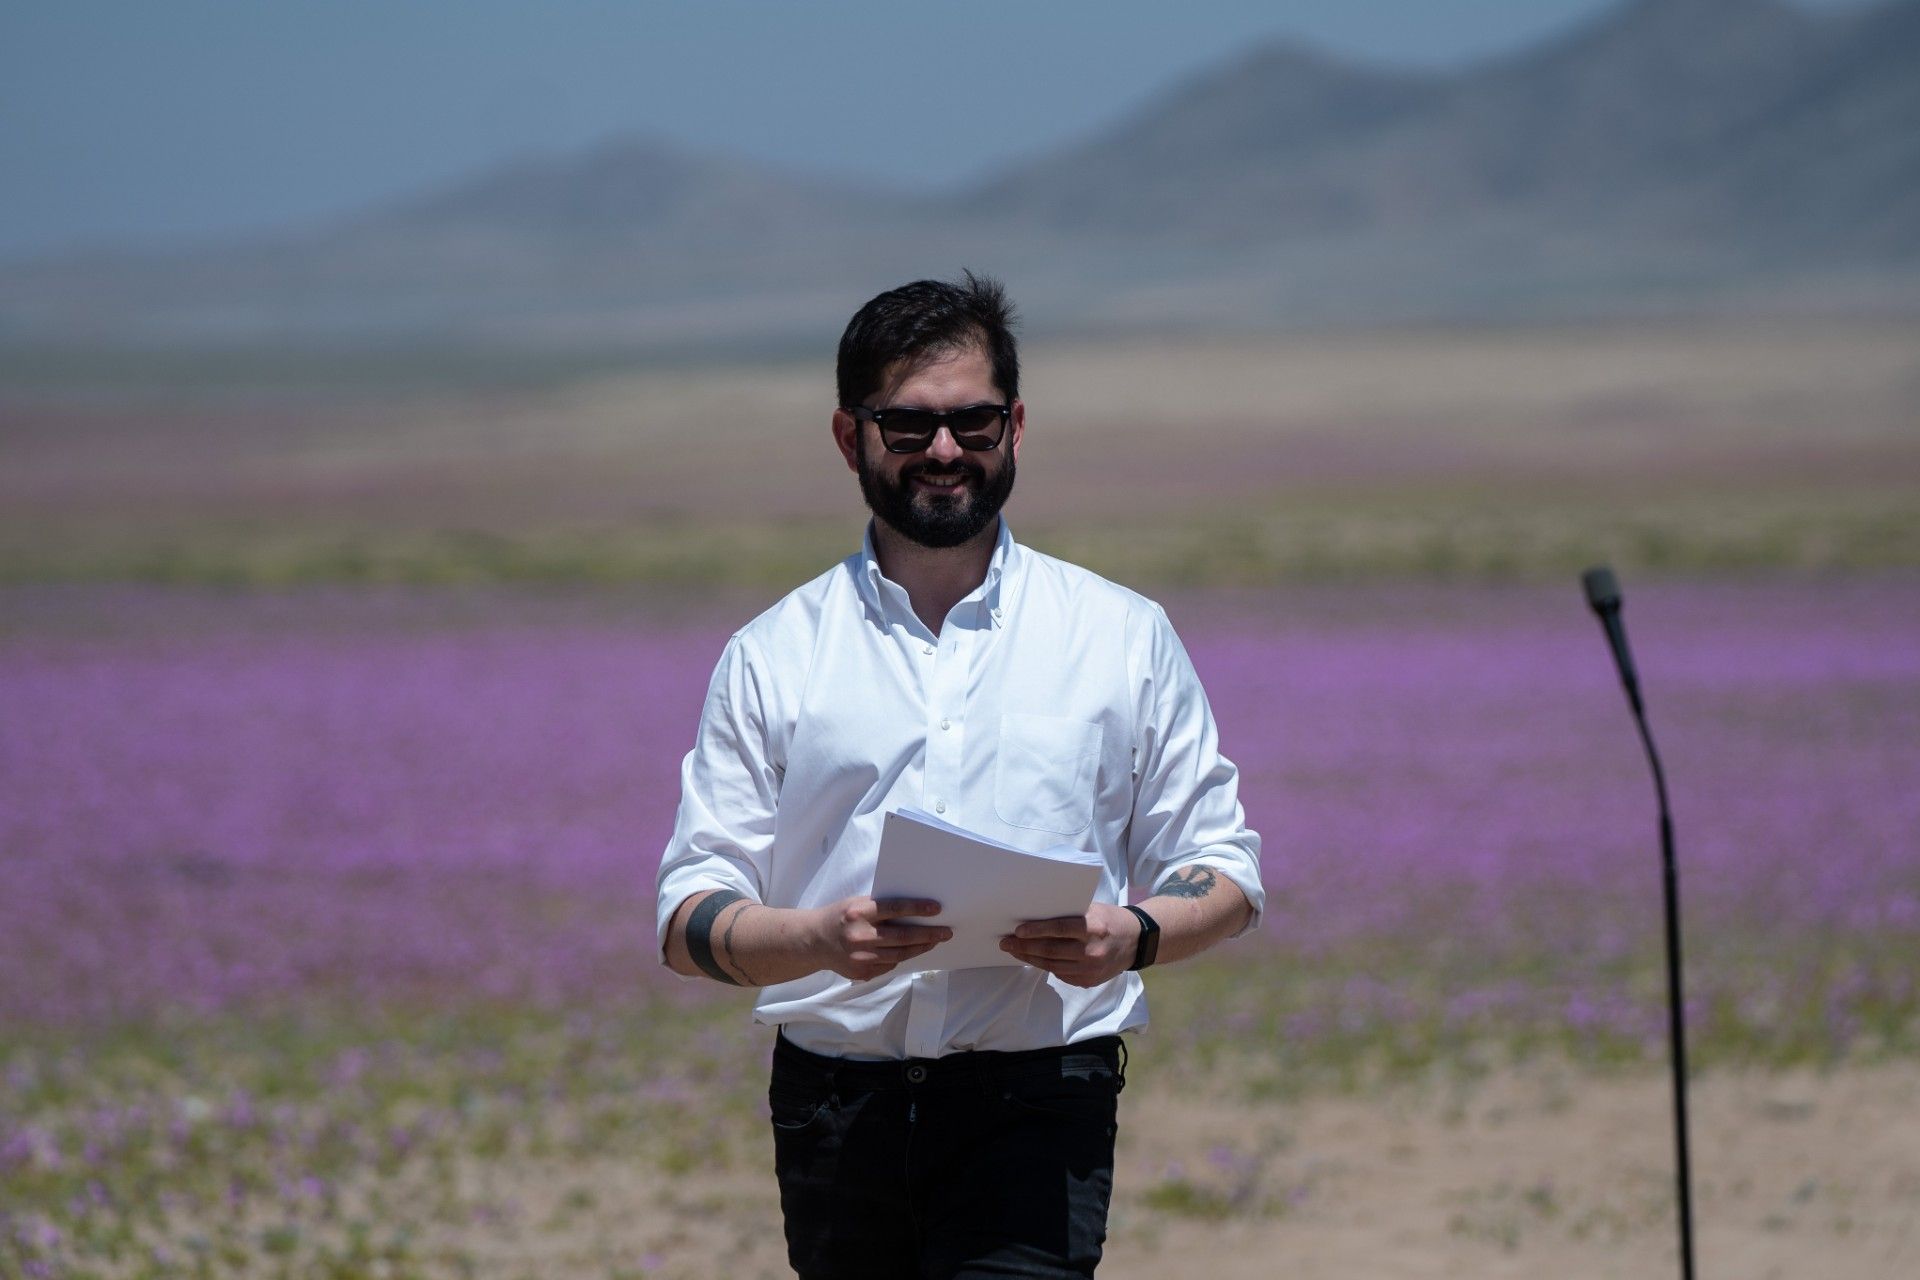 El Presidente de Chile, Gabriel Boric, conmemorando Día Nacional del Medio Ambiente en Desierto Florido. (Foto: Ximena Navarro)